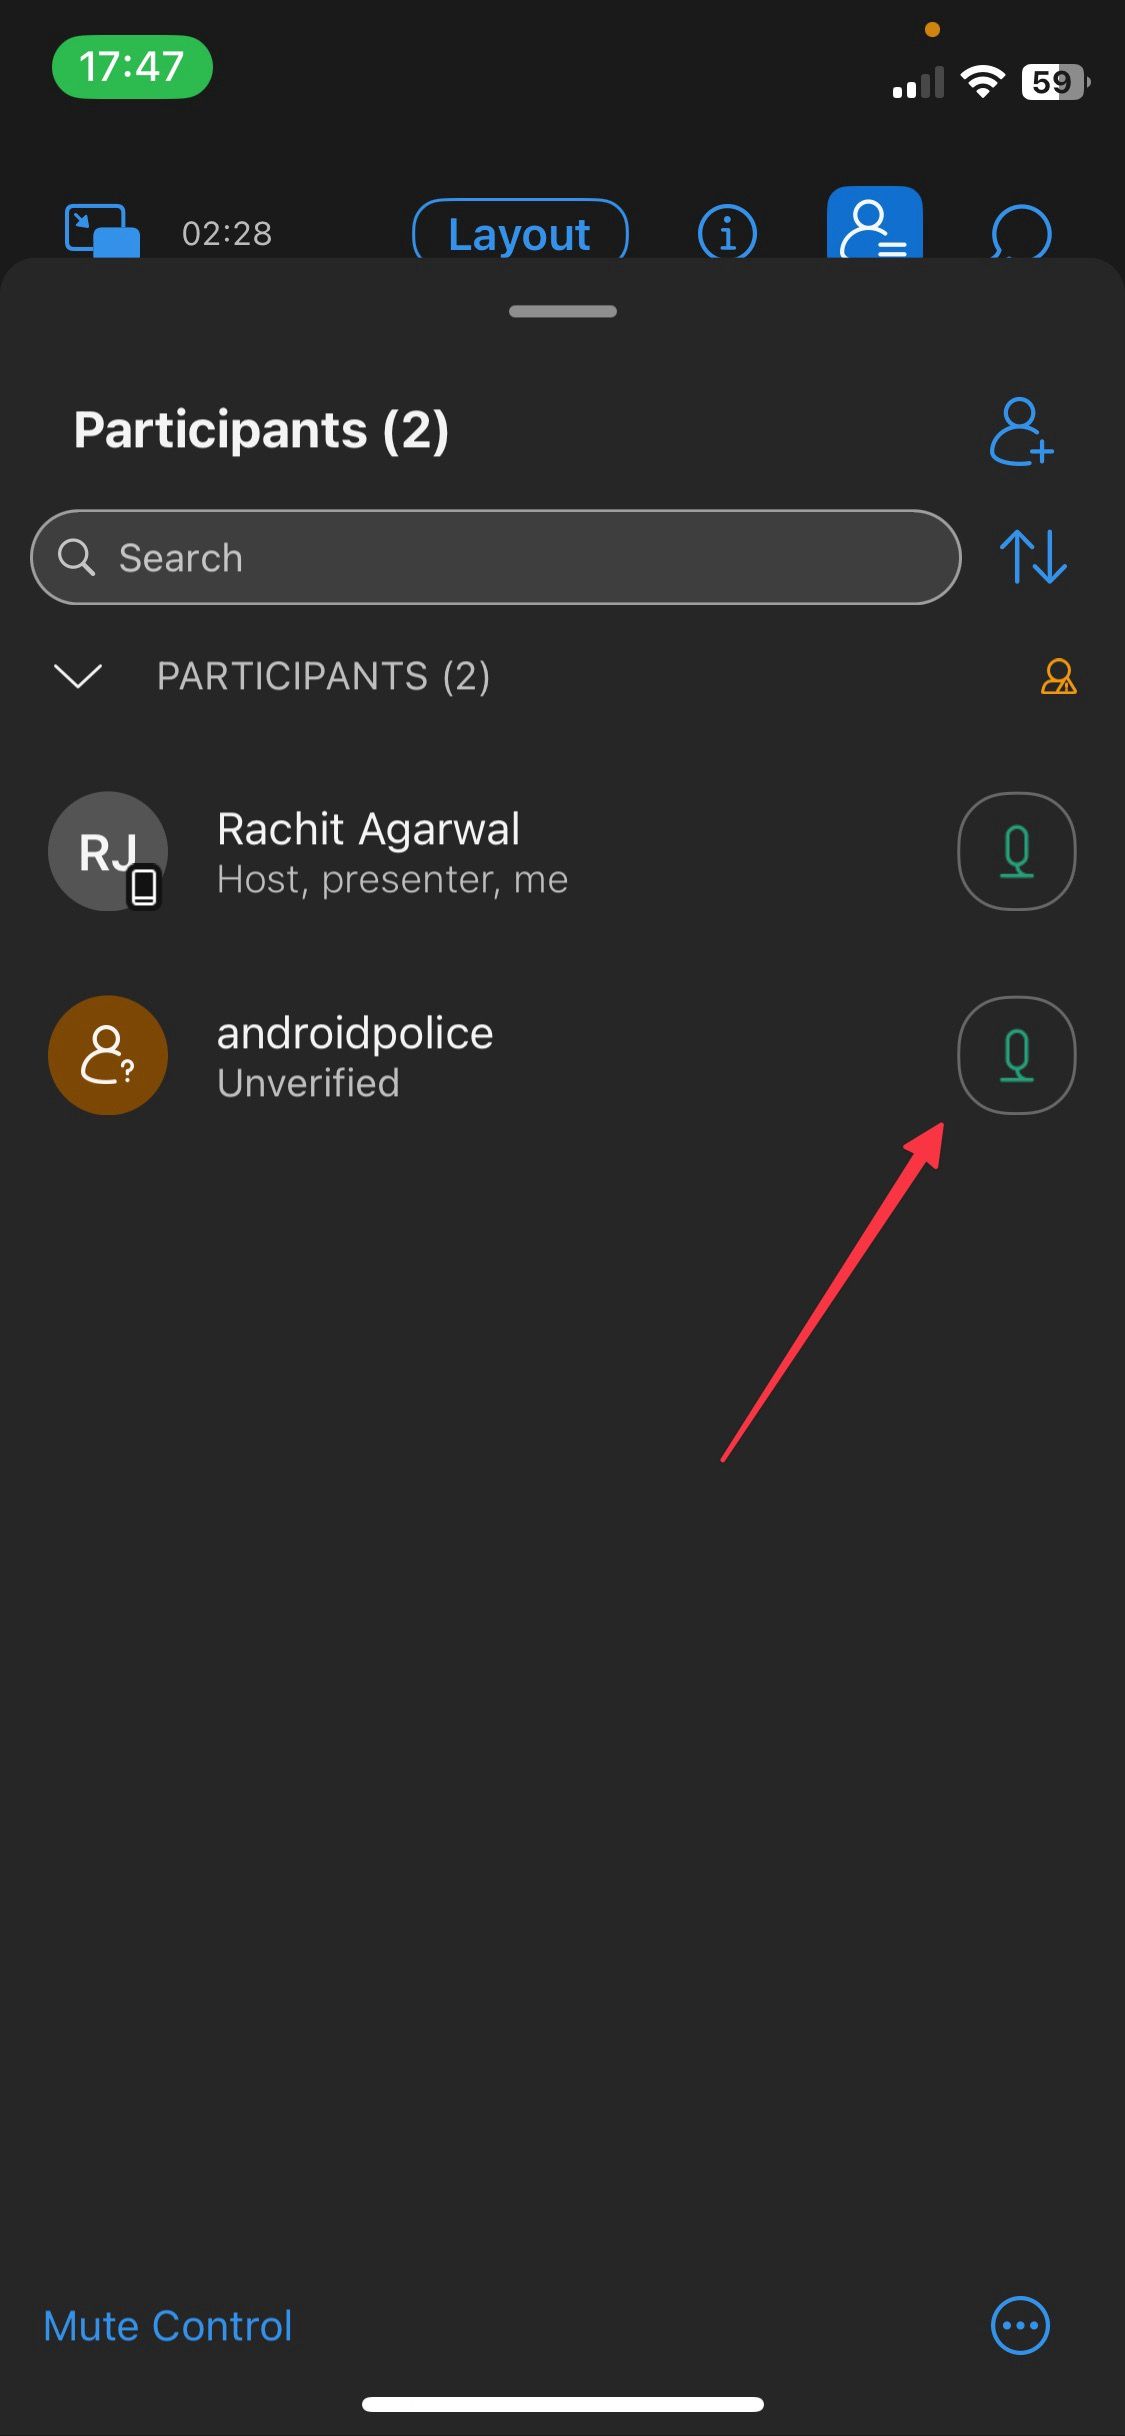 Captura de tela da janela do painel de participantes do aplicativo móvel Webex mostrando o botão do microfone